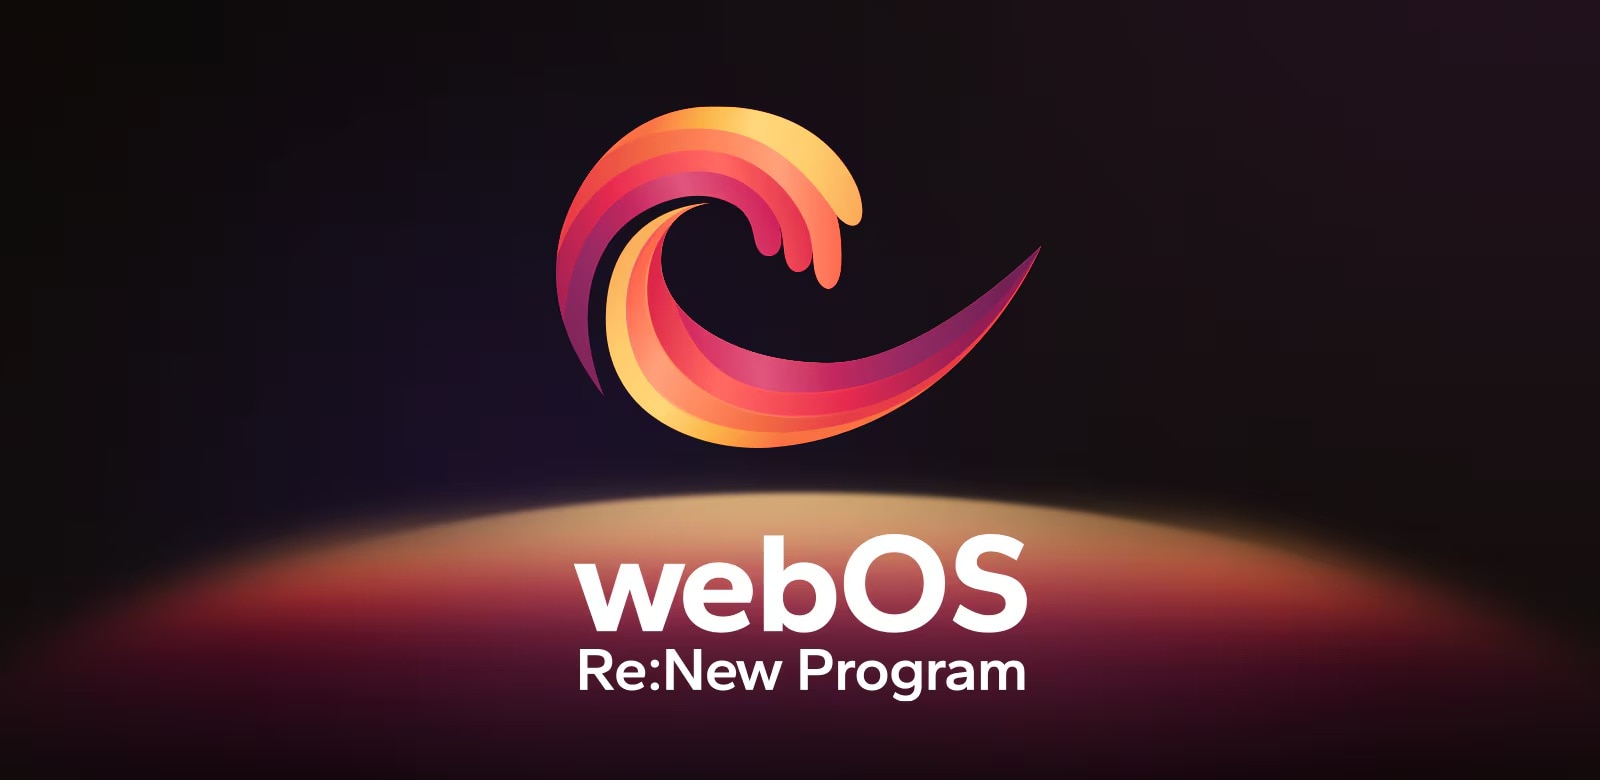 โลโก้โปรแกรม webOS Re:New อยู่บนพื้นหลังสีดำโดยมีทรงกลมสีเหลืองและสีส้ม สีม่วงที่ด้านล่าง